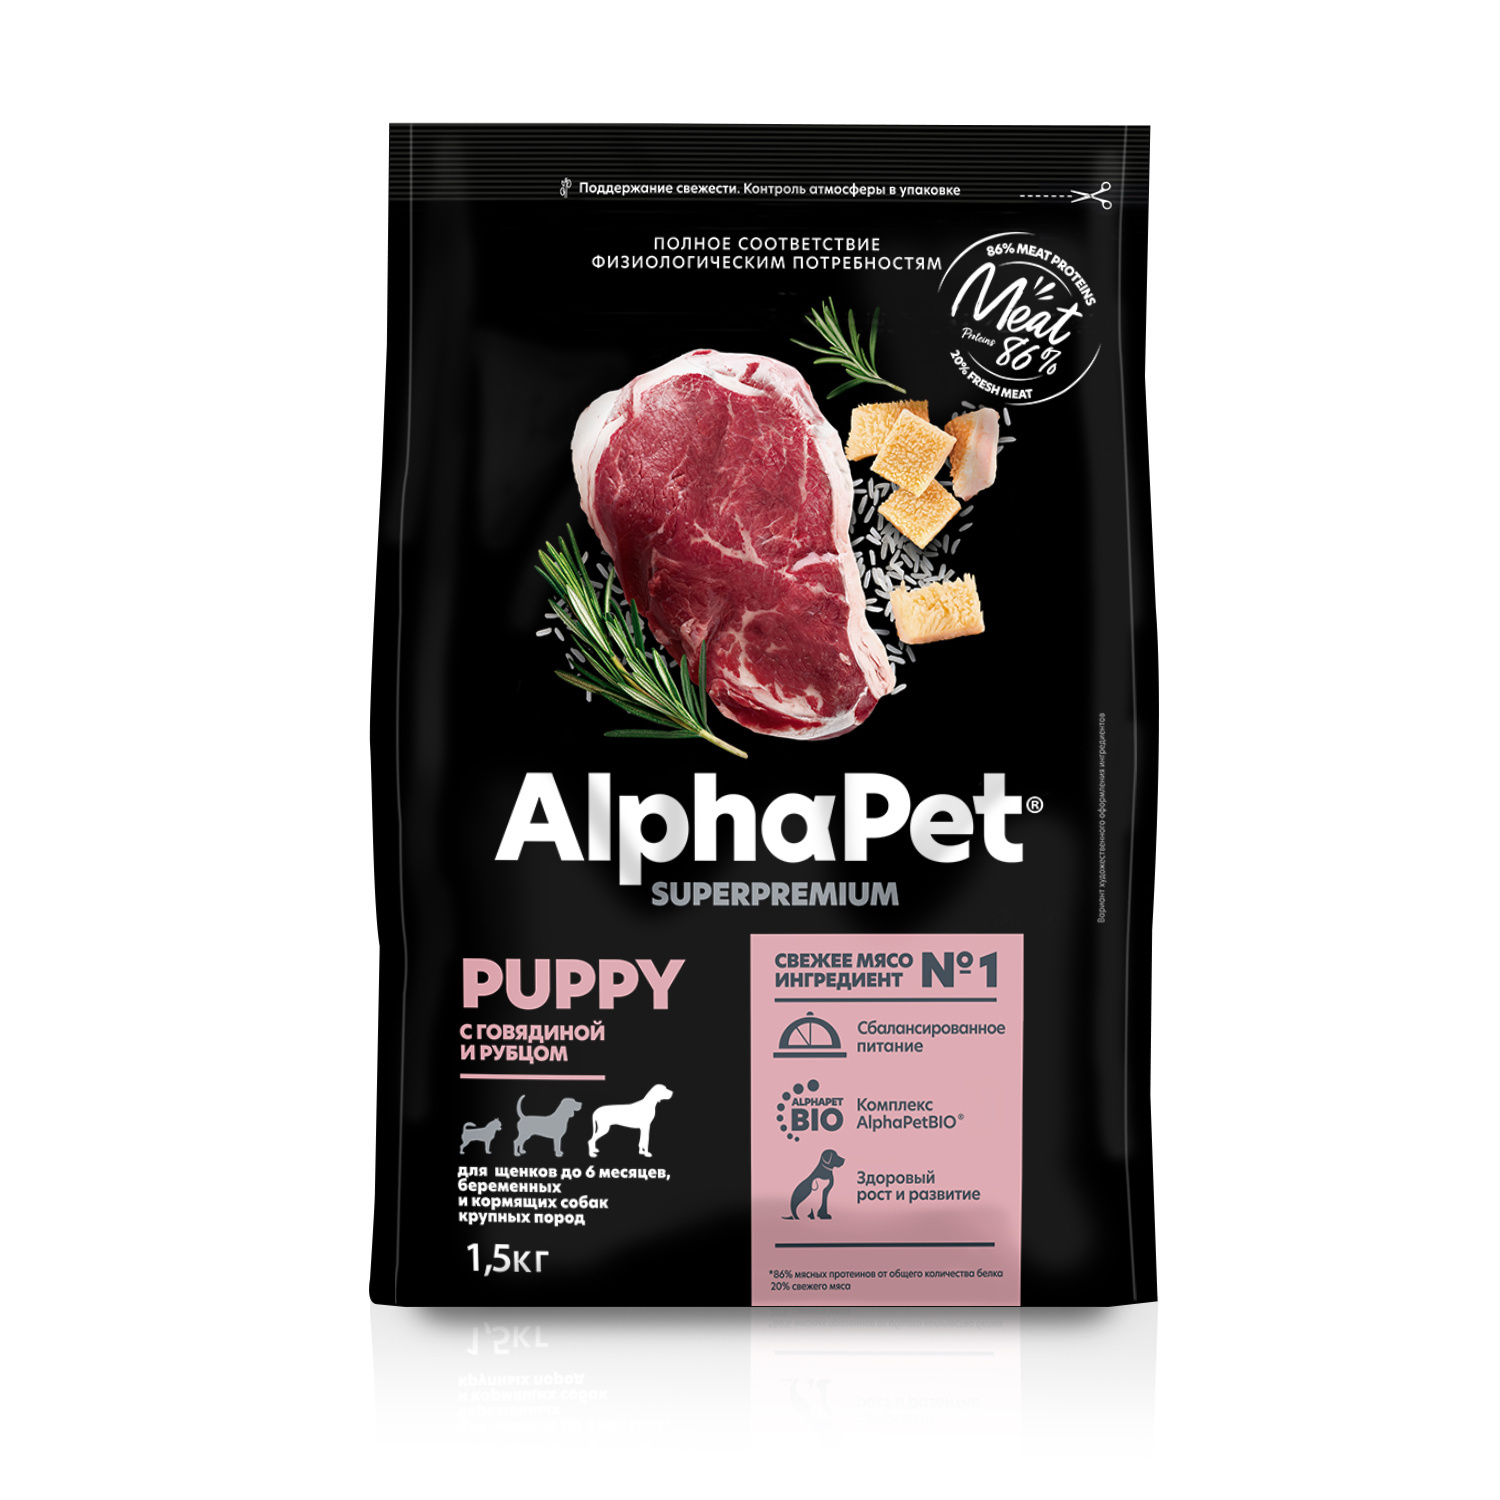 AlphaPet сухой полнорационный корм с говядиной и рубцом для щенков до 6 месяцев, беременных и кормящих собак крупных пород (1,5 кг) - фото 1